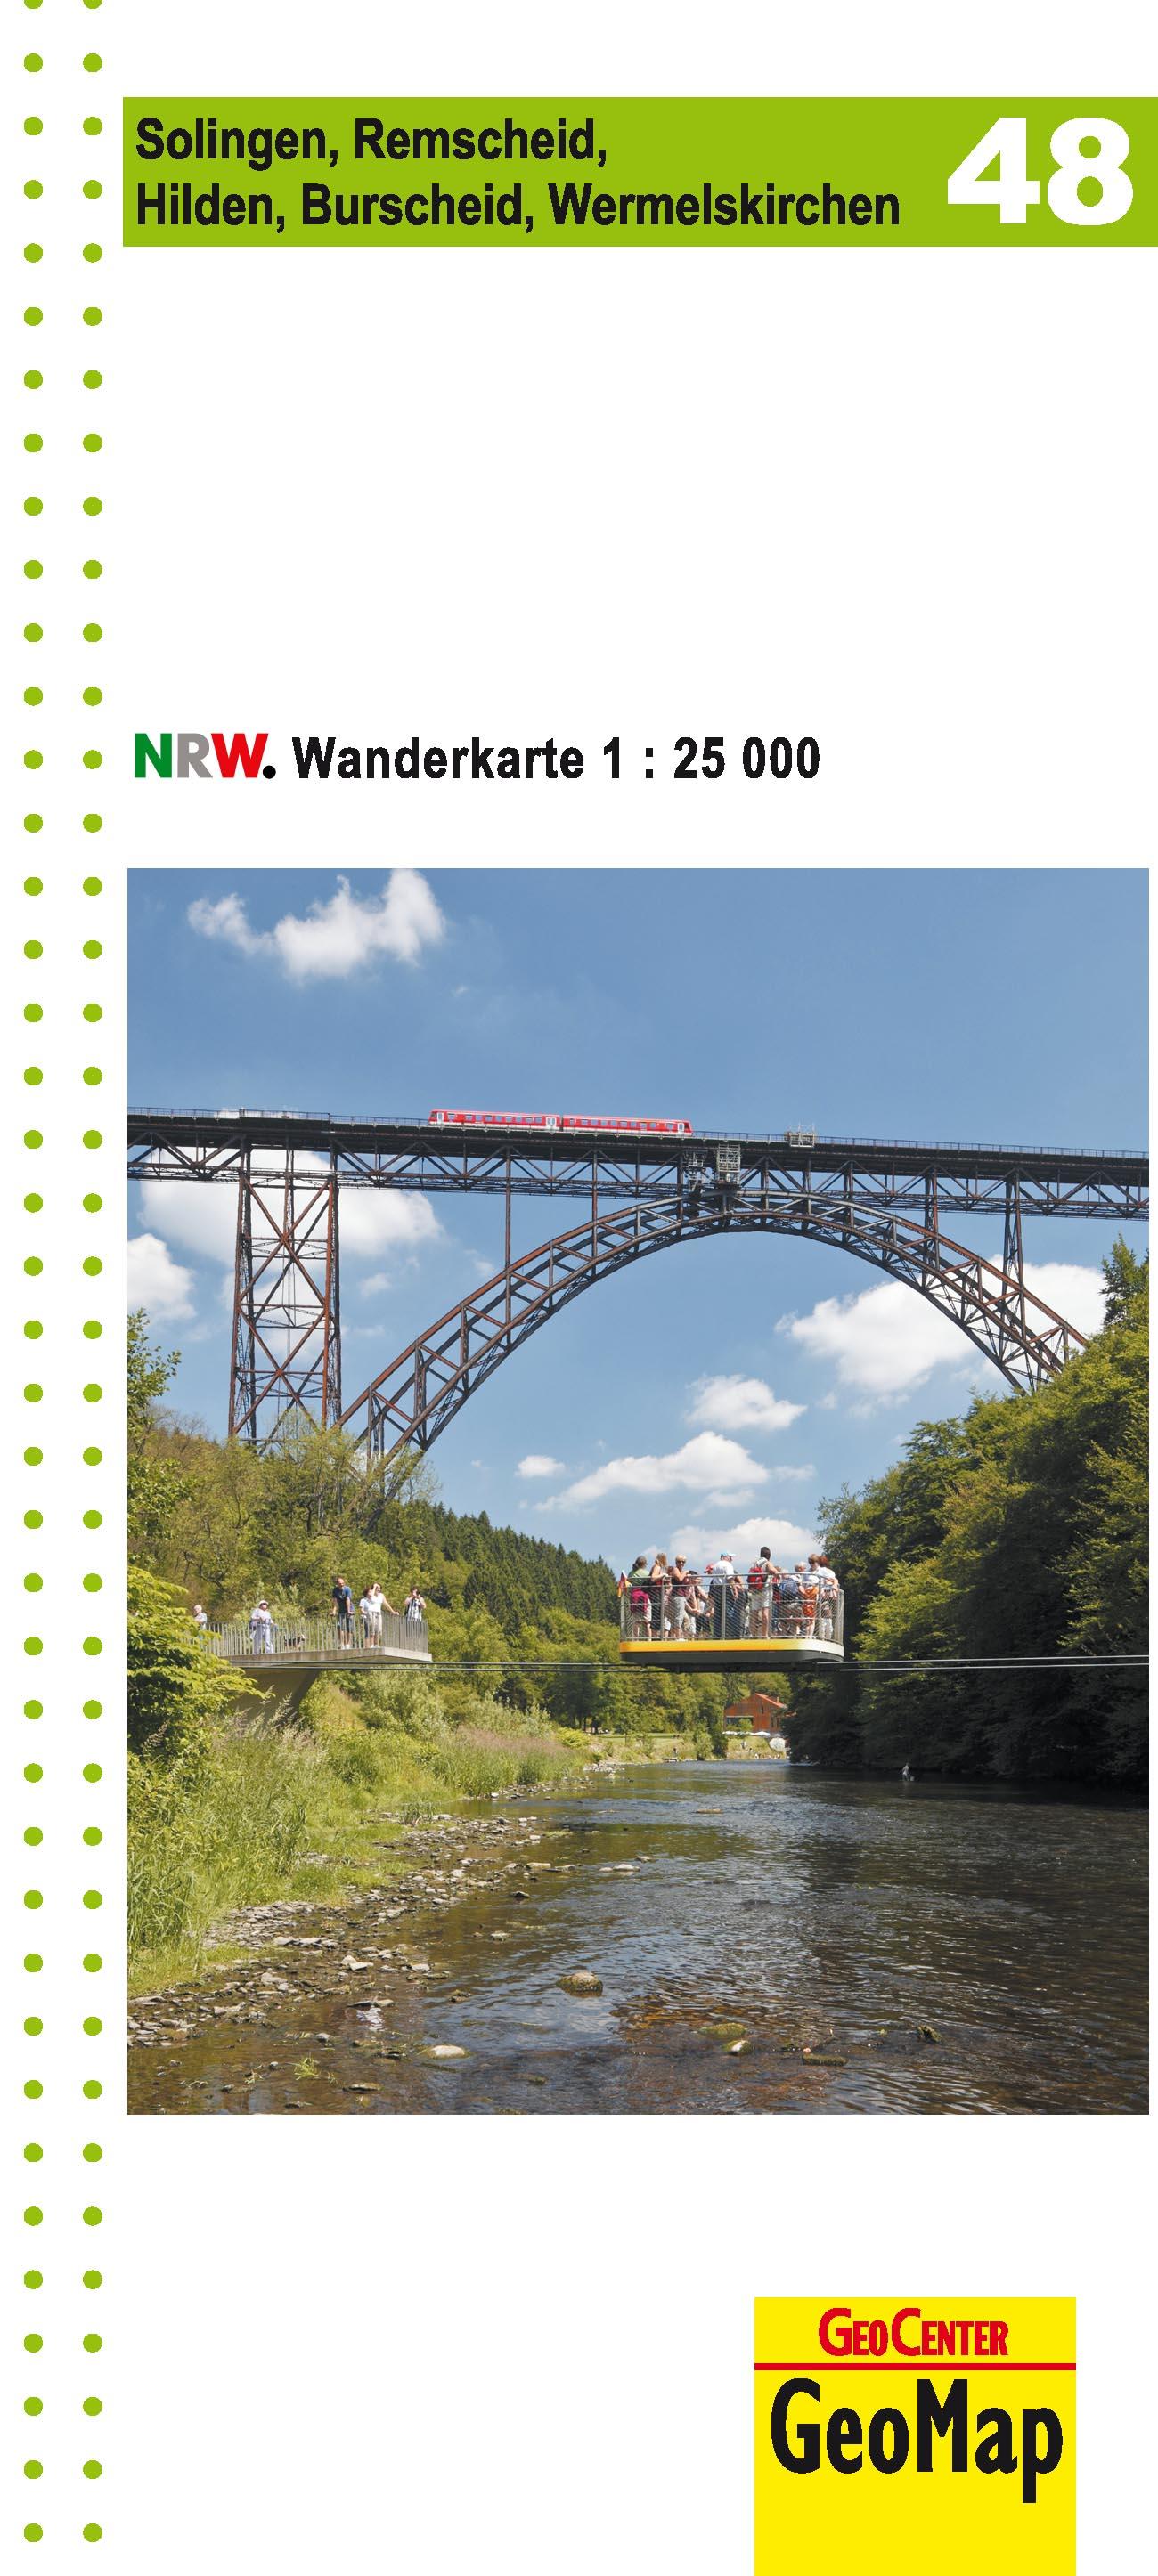 NRW Wanderkarte 48 Solingen, Remscheid, Hilden, Burscheid, Wermelskirchen  1 : 25 000